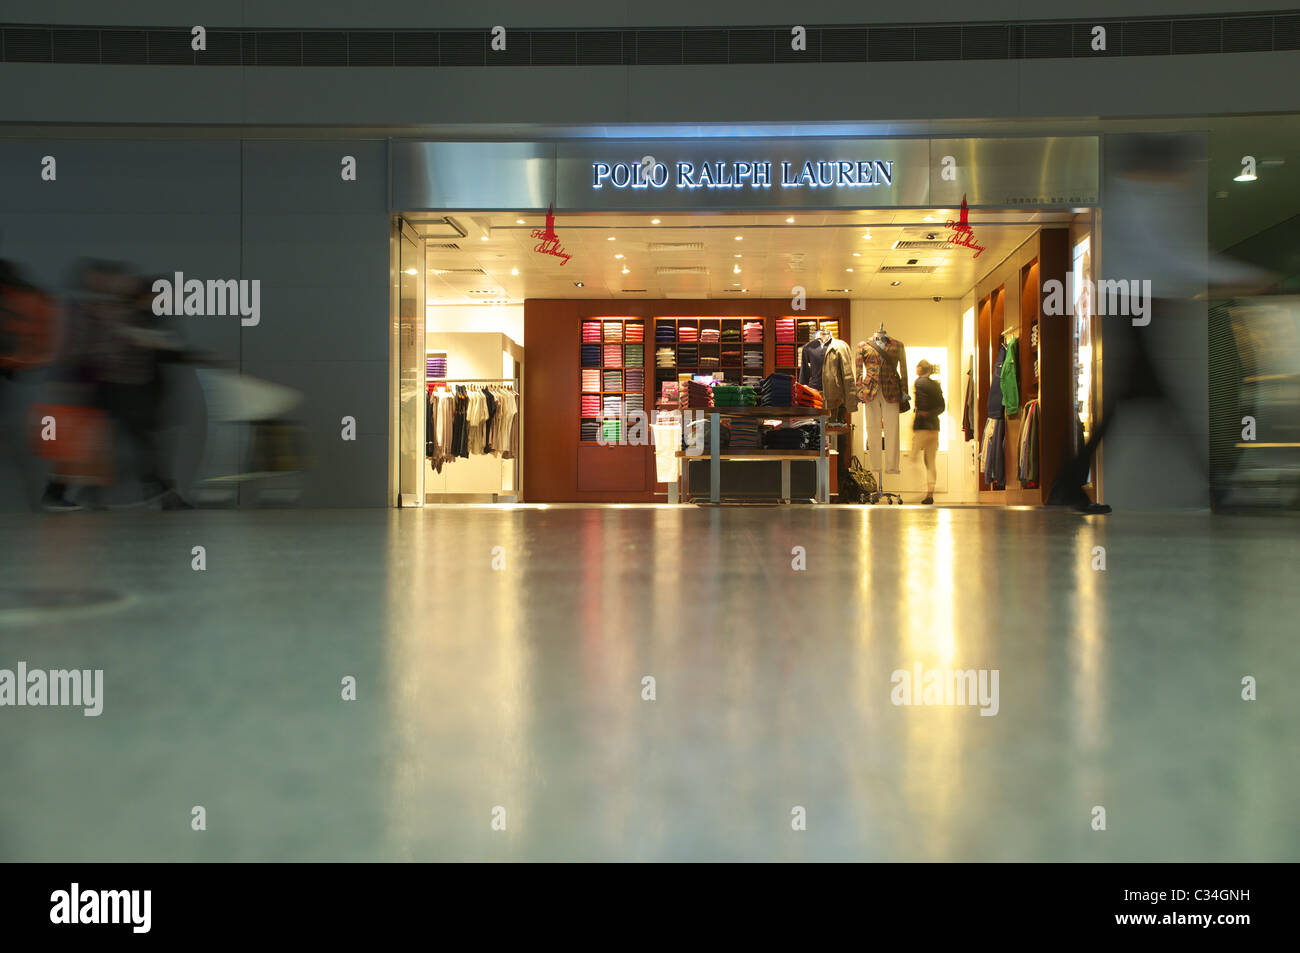 Ralph Lauren Store At Geneva Airport Switzerland Stock Photo - Download  Image Now - Ralph Lauren - Designer Label, Airport, Boutique - iStock